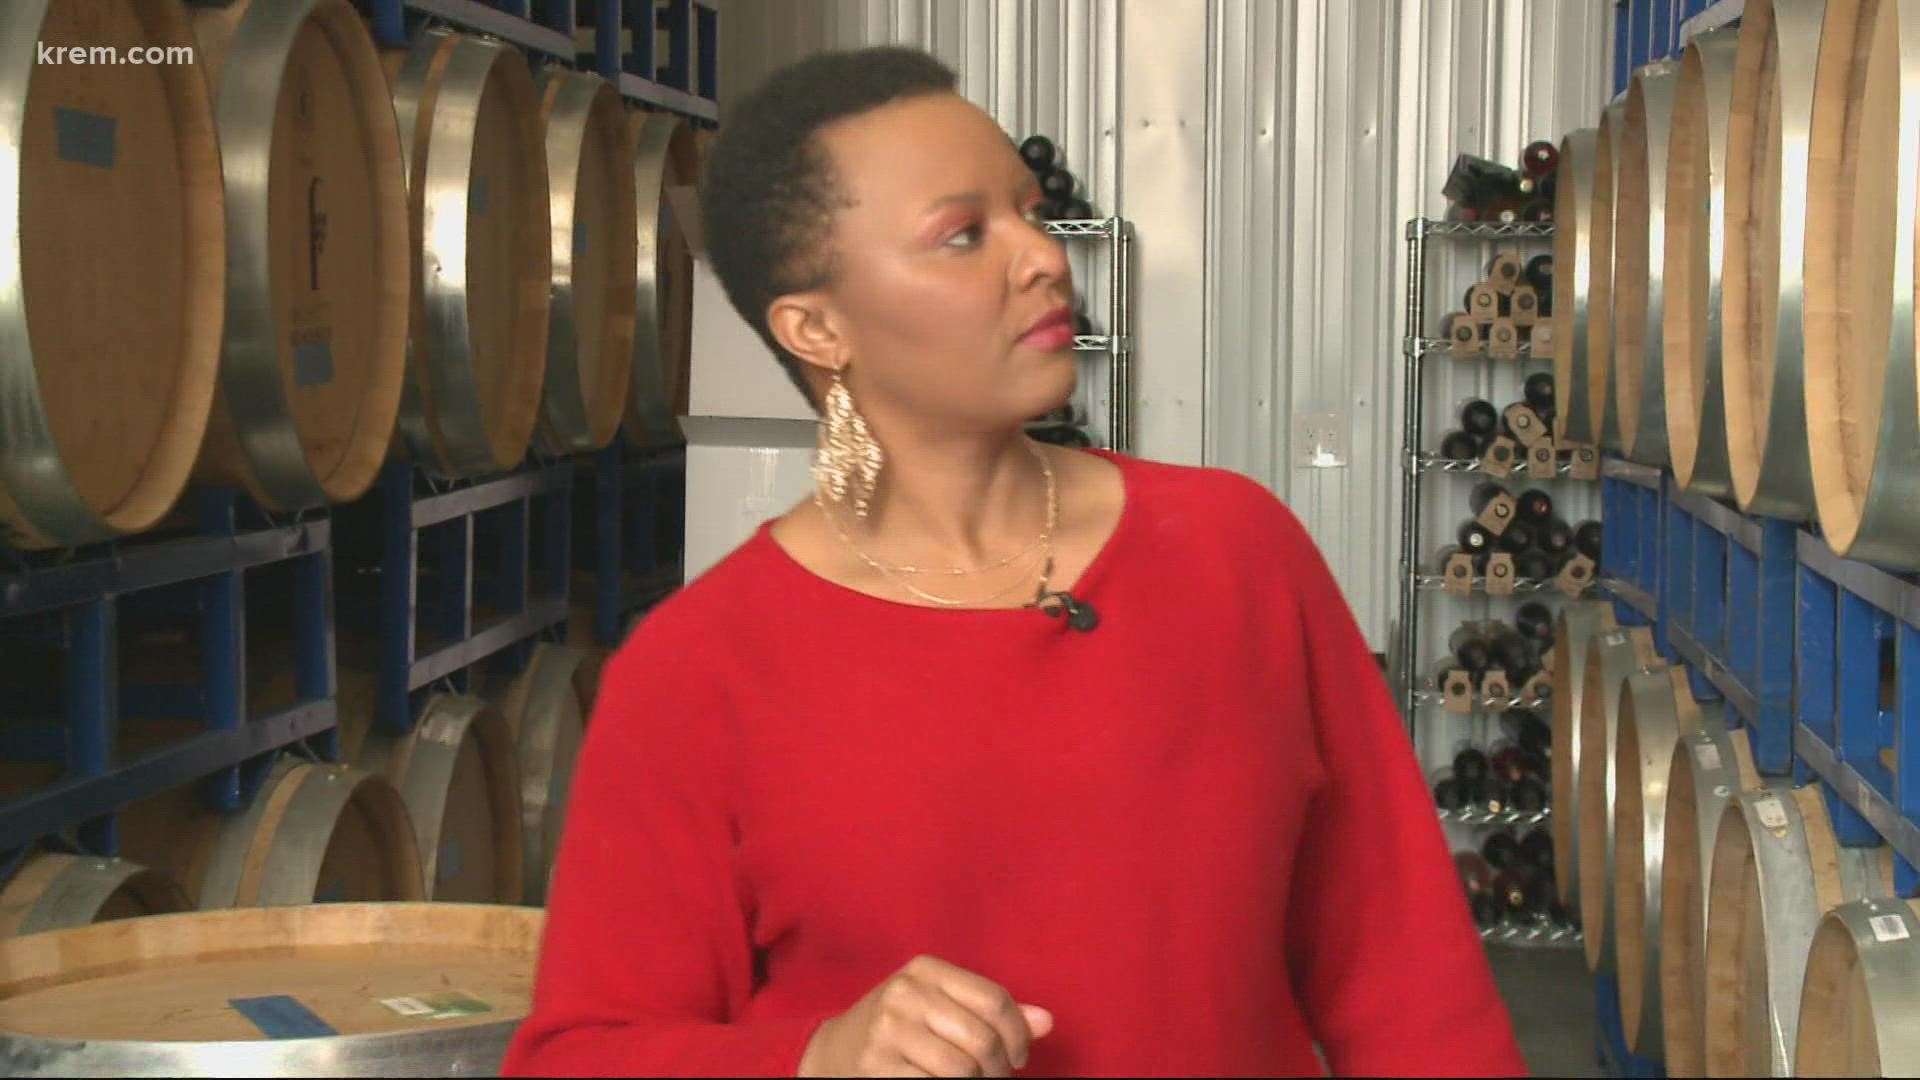 Lack of diversity in Washington winemaking